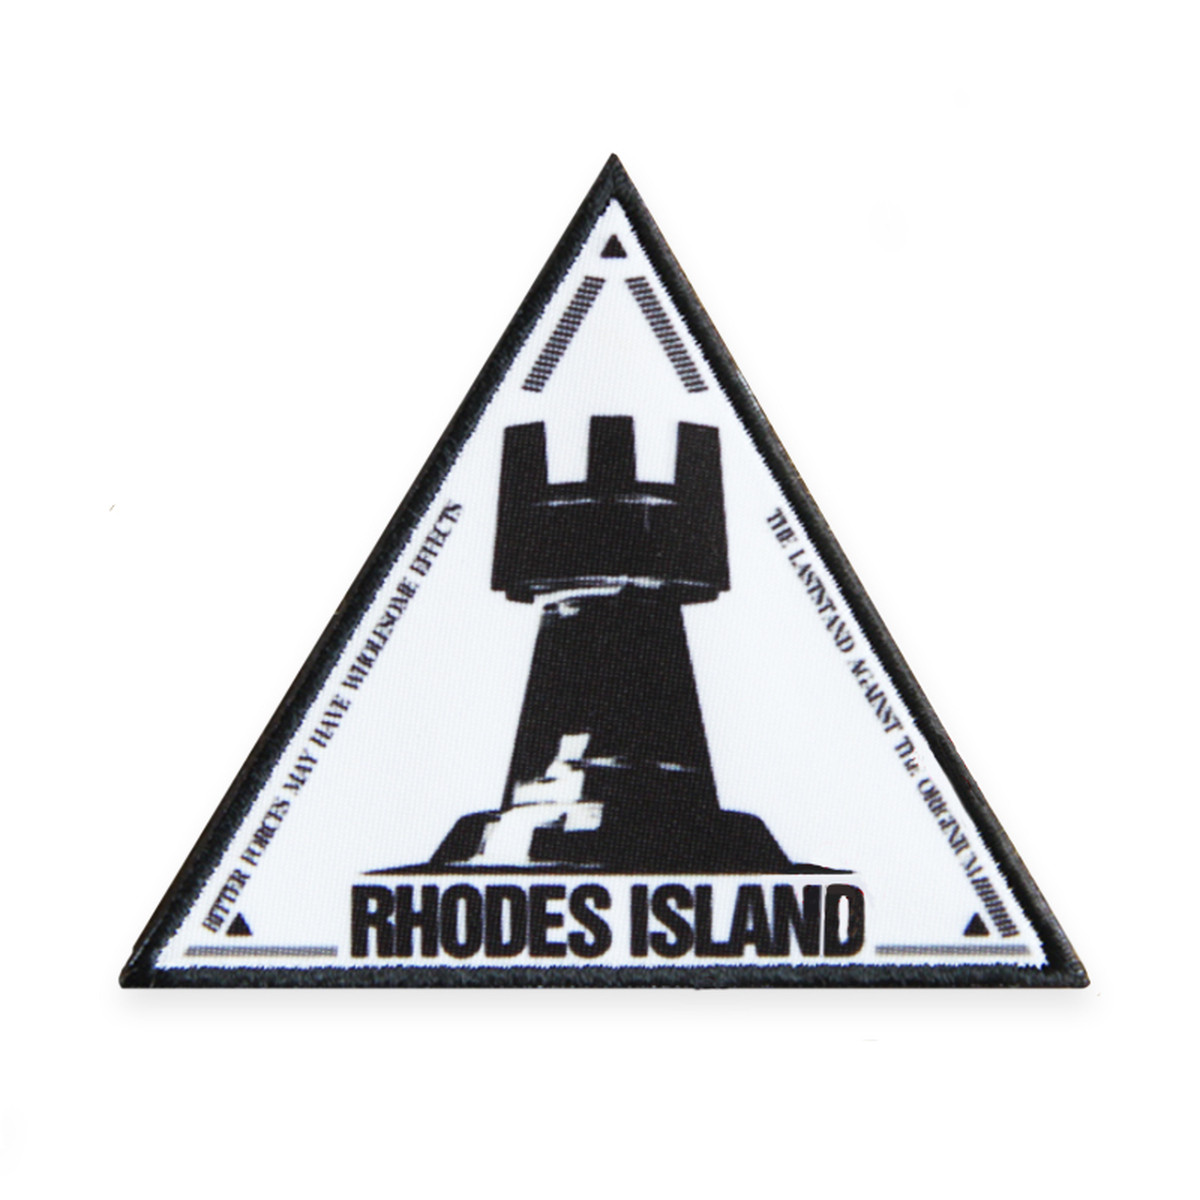 Rhodes Island